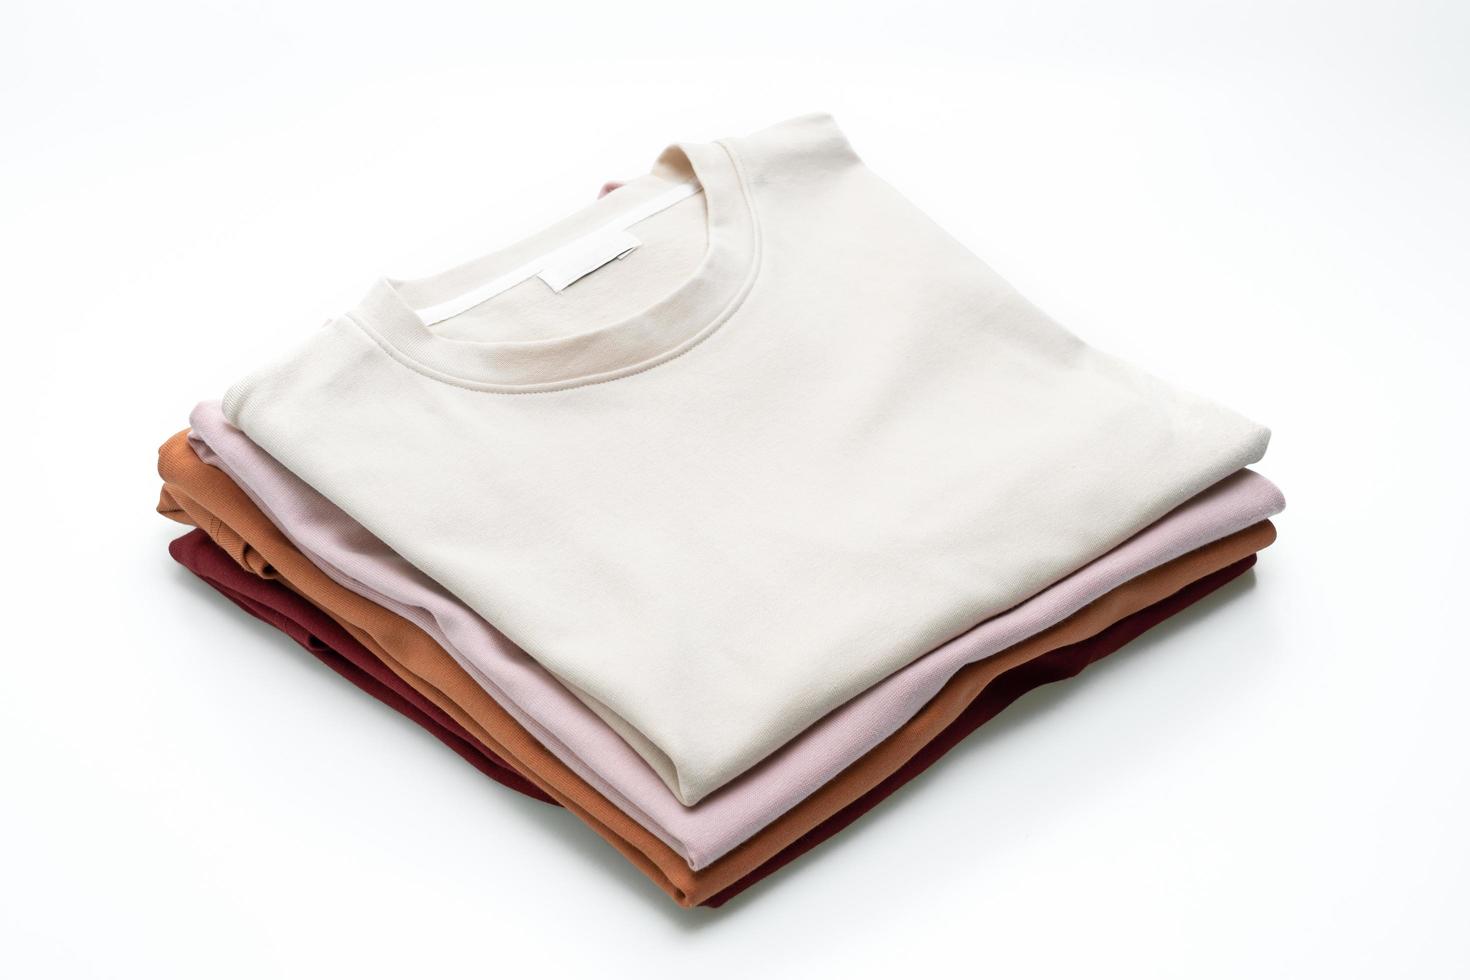 camisetas dobradas isoladas no fundo branco foto